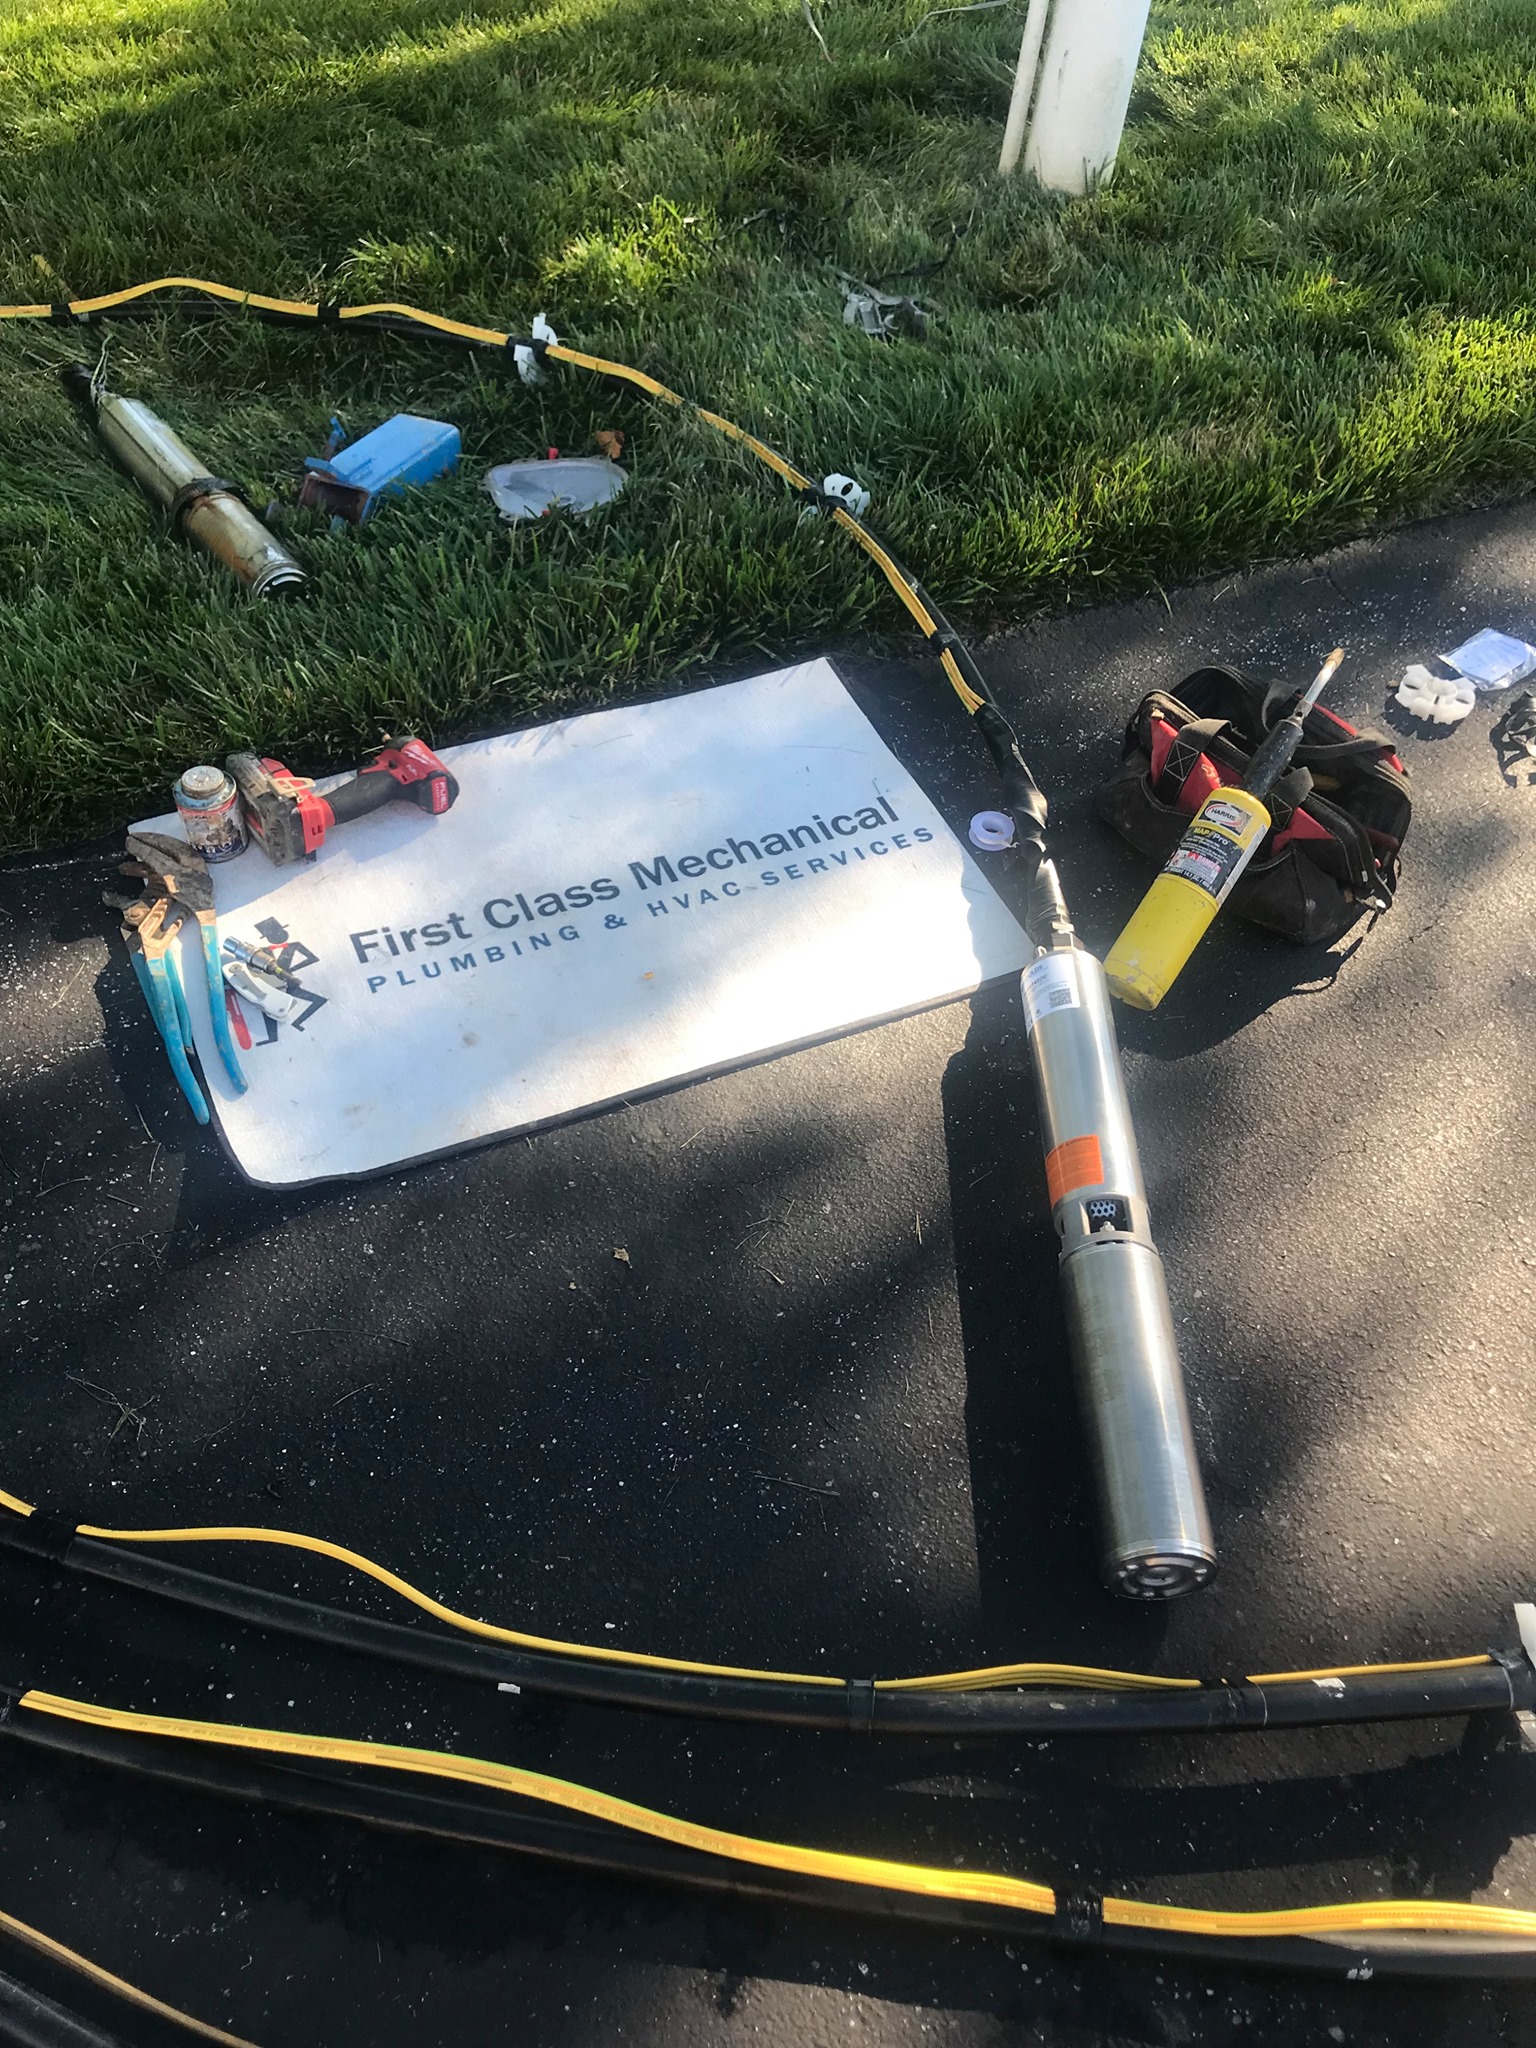 Woodstock MD First Class Mechanical Emergency Well Pump Repair